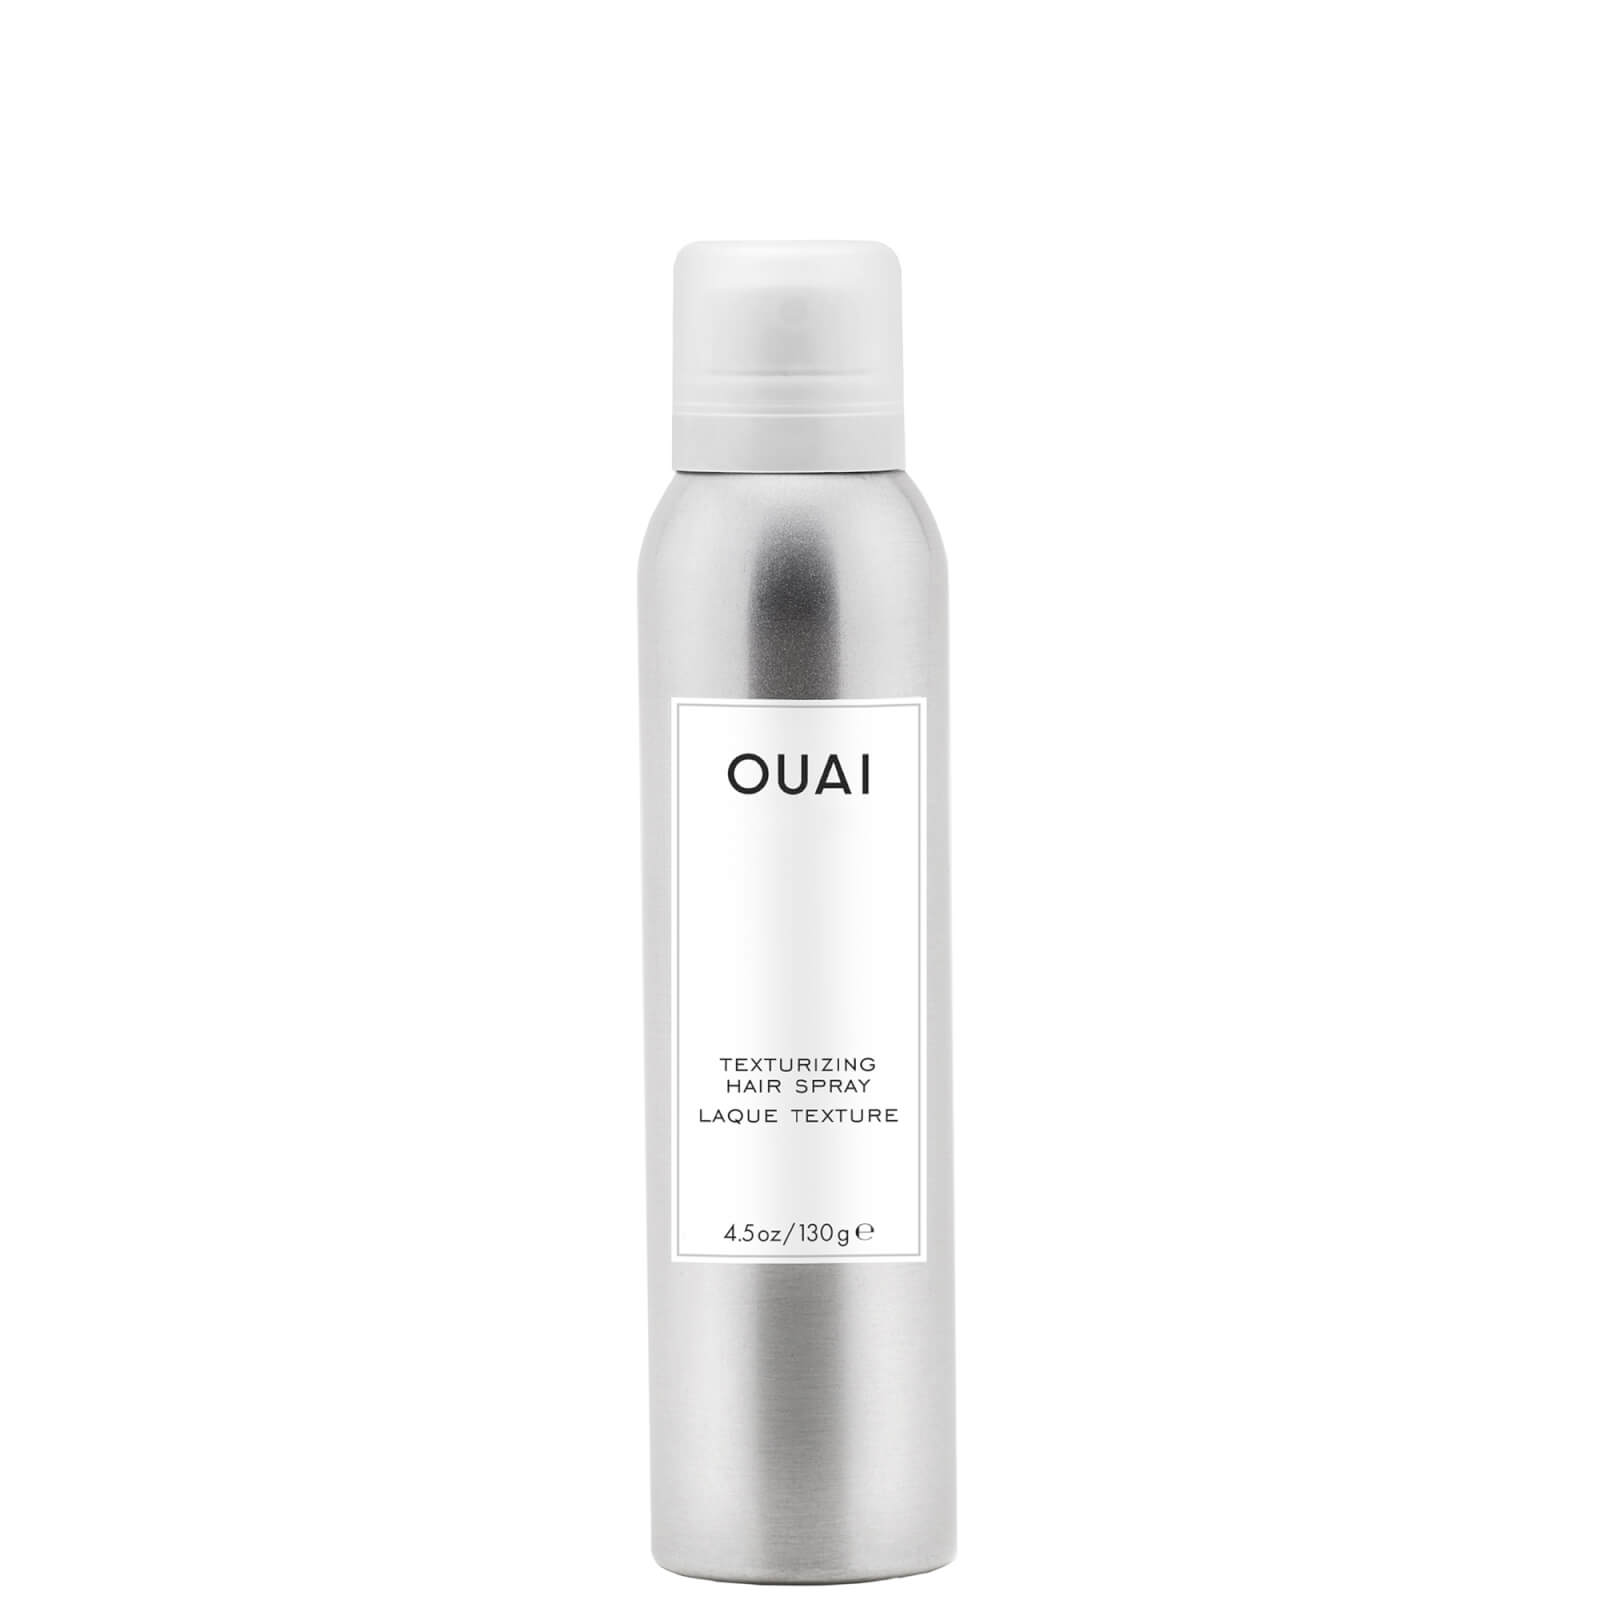 OUAI Texturizing Hair Spray 130g product